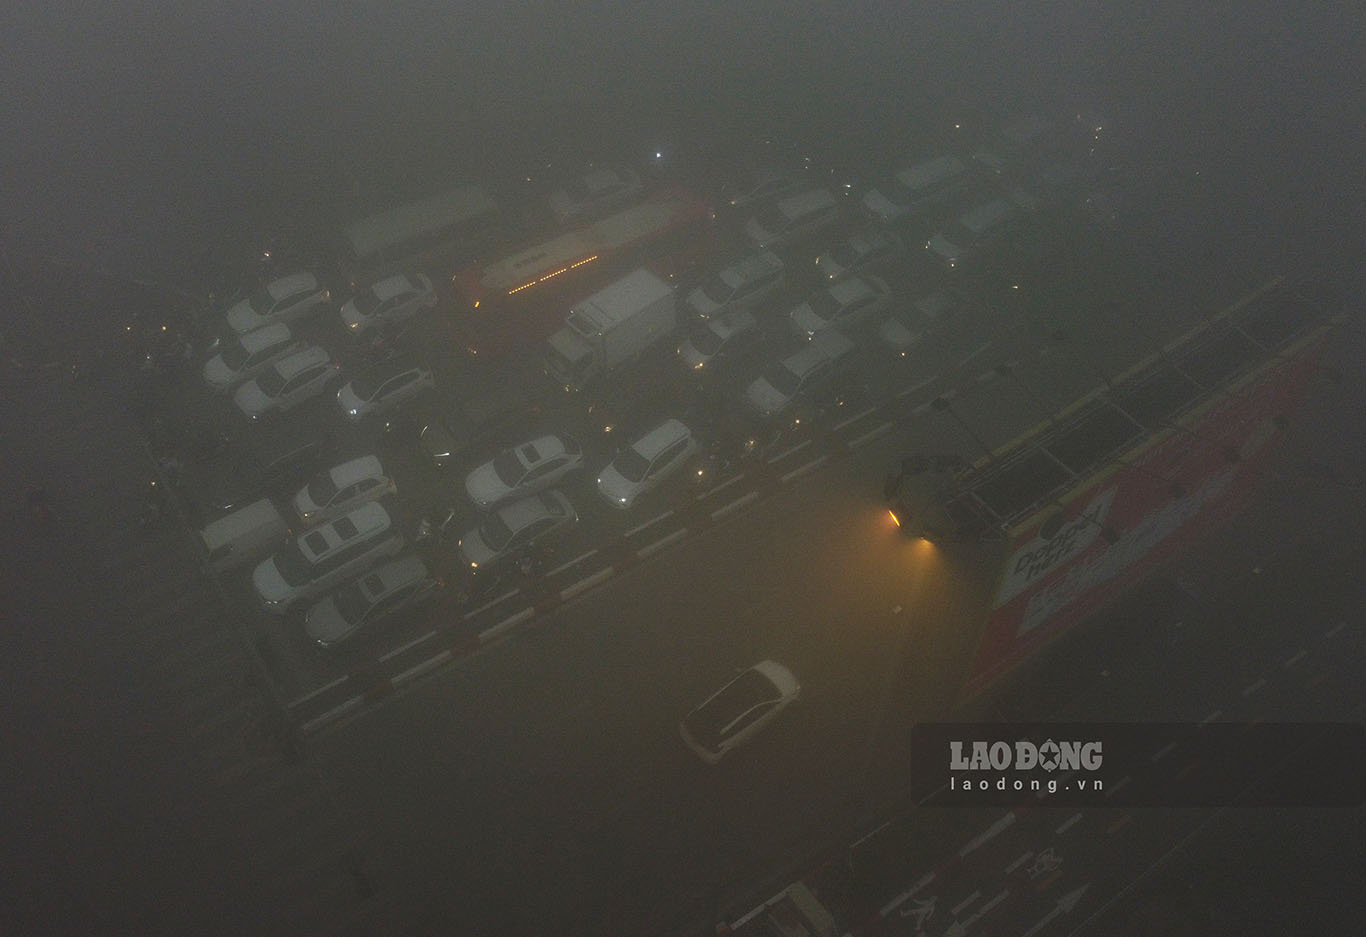 Ghi nhận đến hơn 7h sáng nay, lớp sương mù dày đặc khiến tầm nhìn của người dân bị giảm xuống rất nhiều. Các phương tiện di chuyển trên đường phải bật đèn.